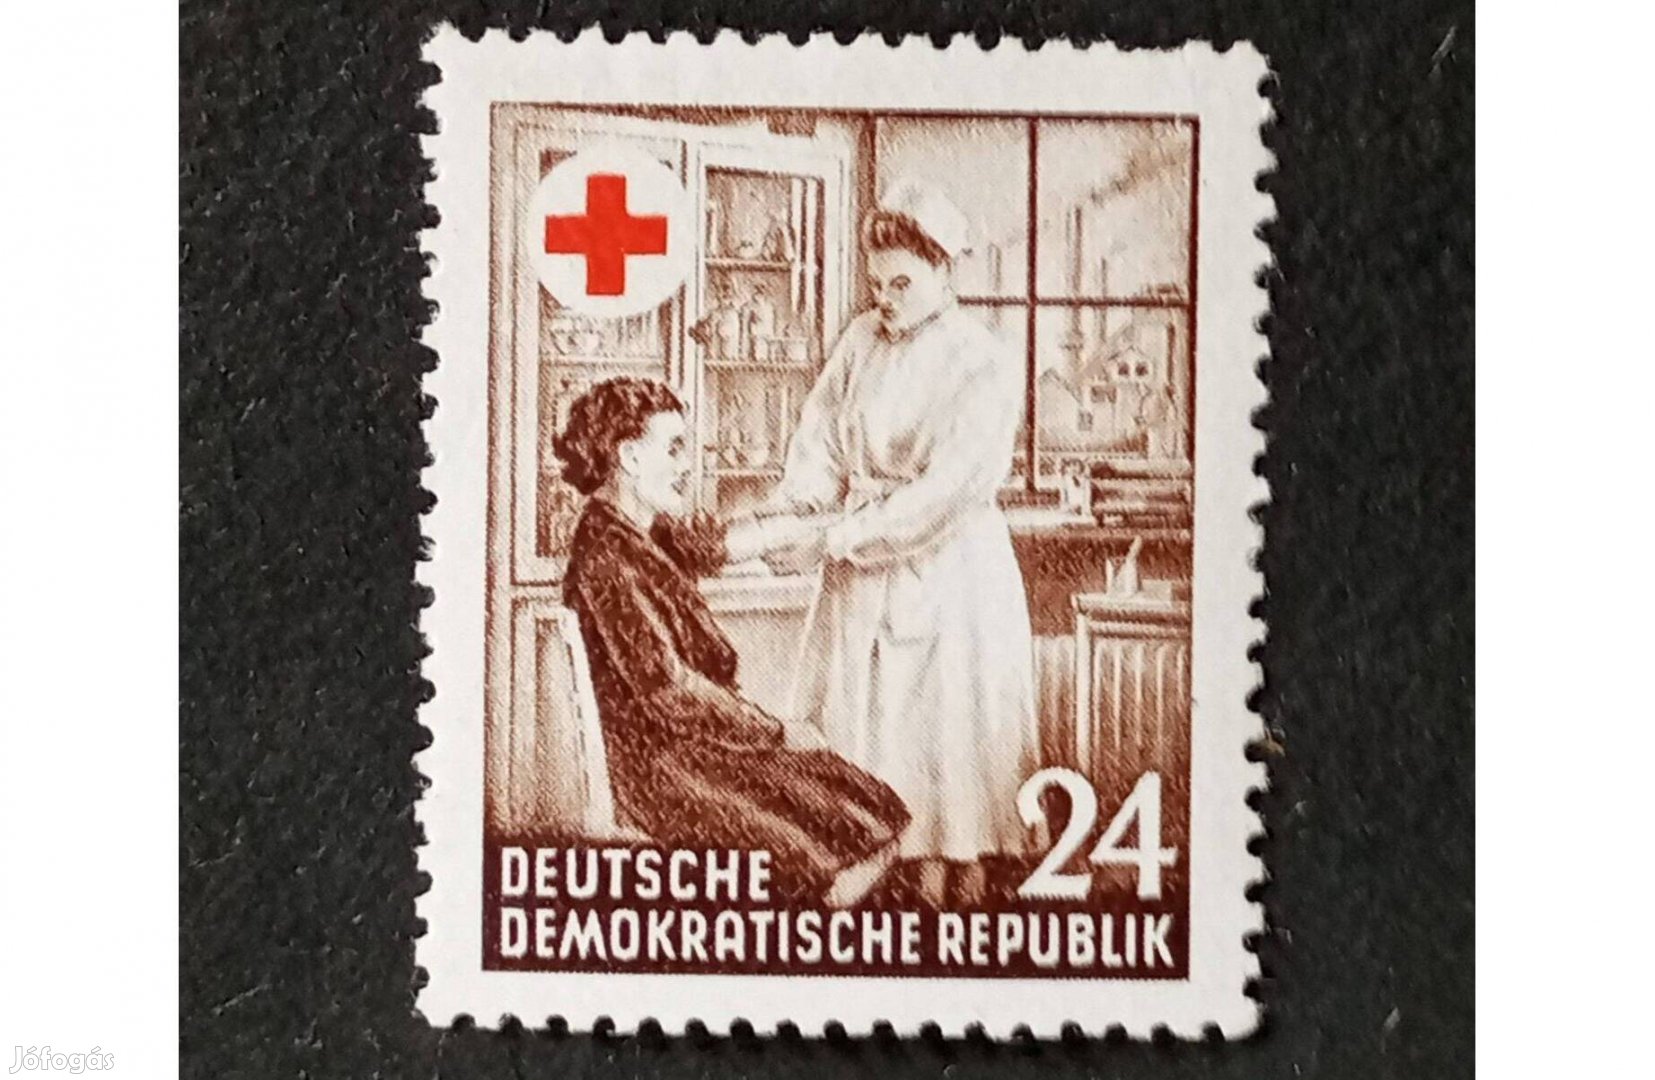 NDK DDR 1953 Vöröskereszt postatiszta bélyeg 1953 Red Cross